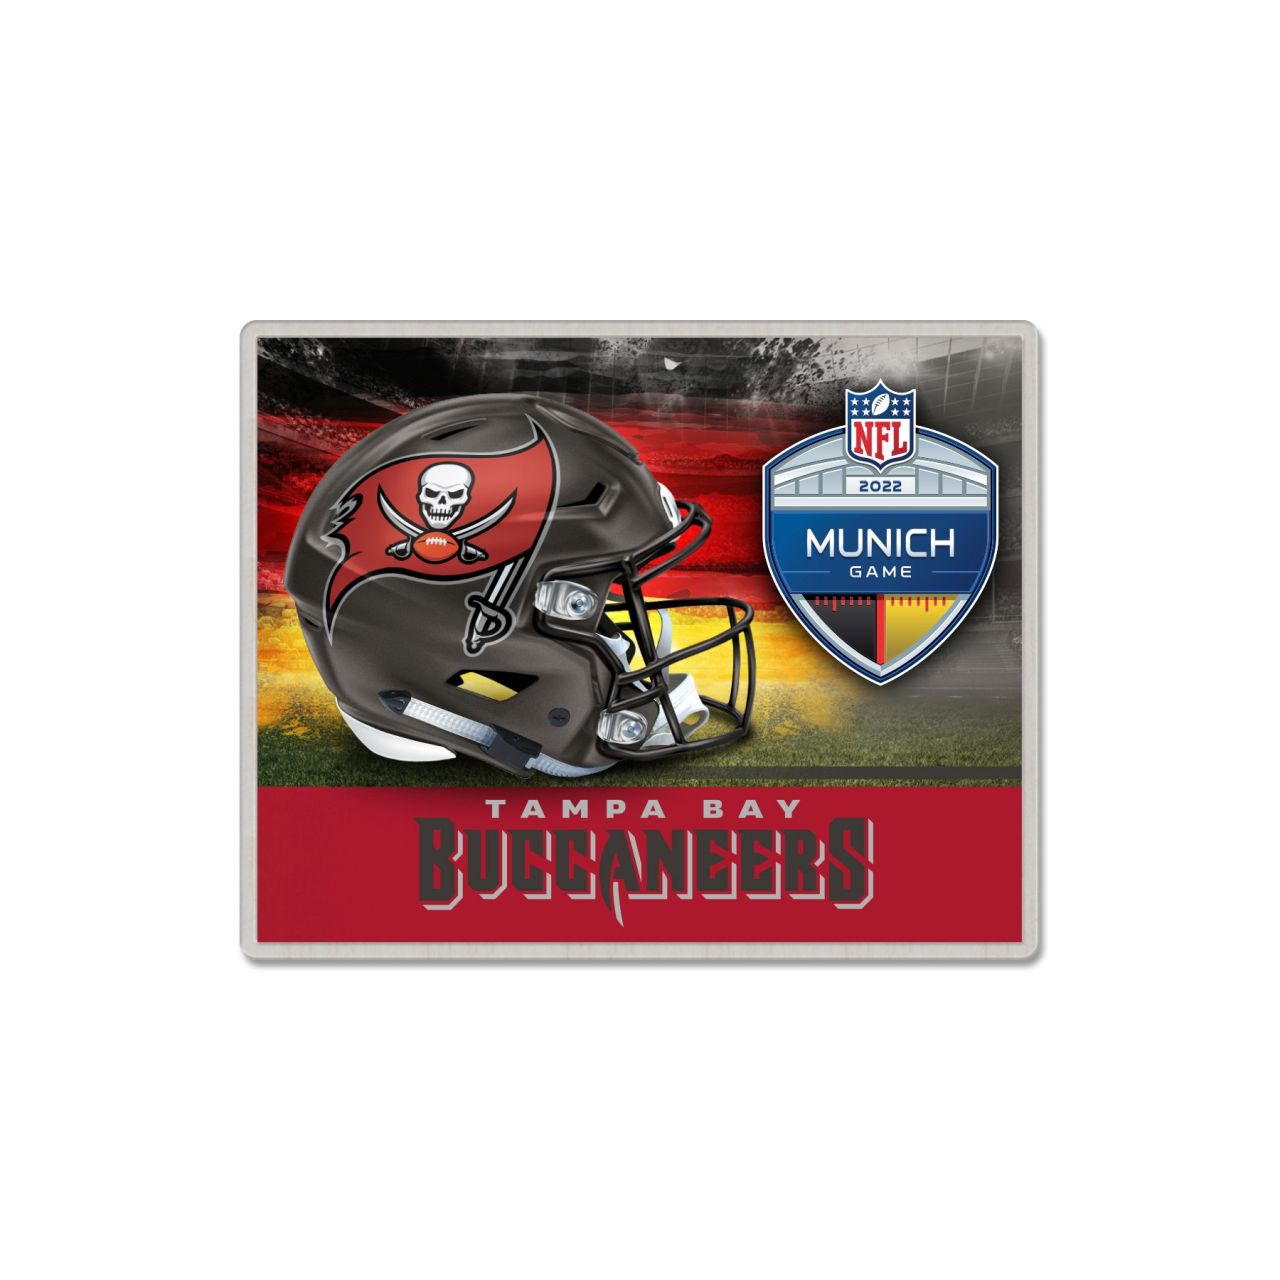 NFL Pin Badge Anstecknadel - NFL MUNICH Tampa Bay Buccaneers von WinCraft